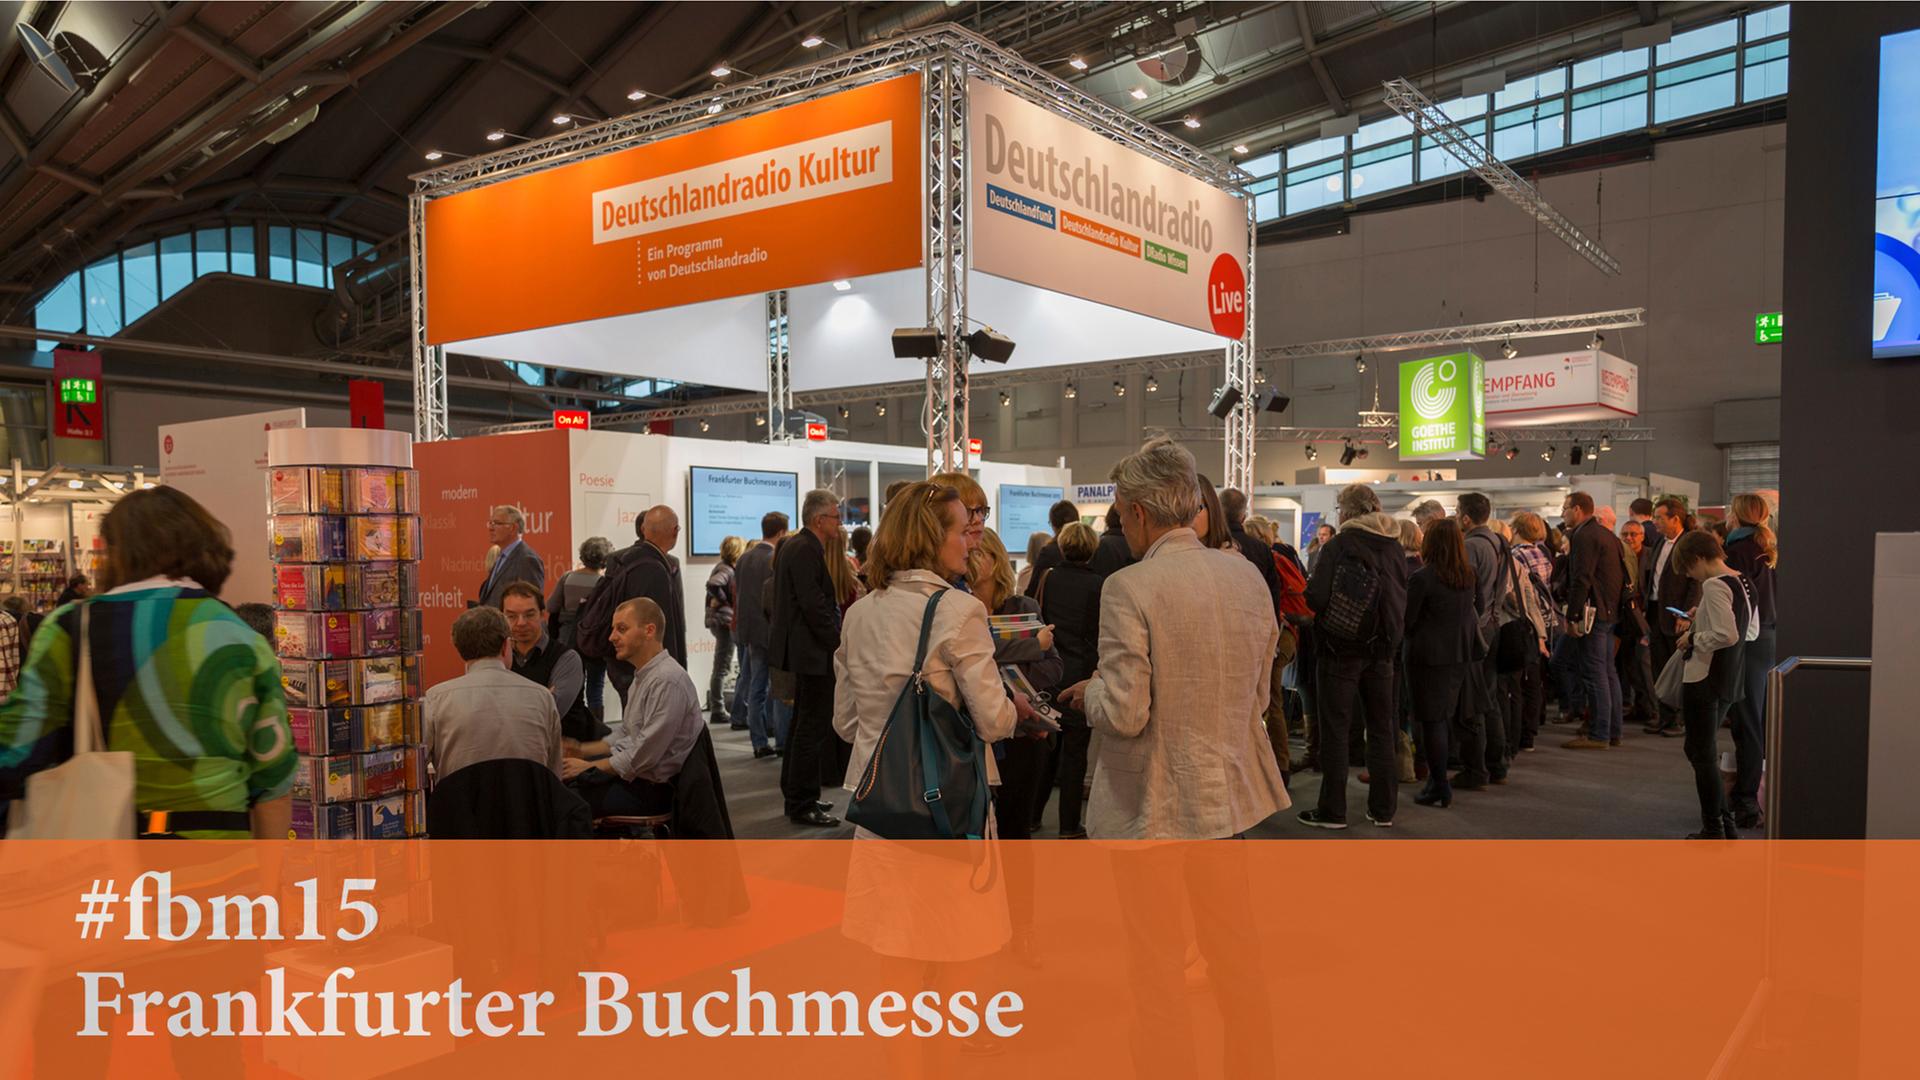 Der Stand von Deutschlandradio Kultur auf der Frankfurter Buchmesse 2015